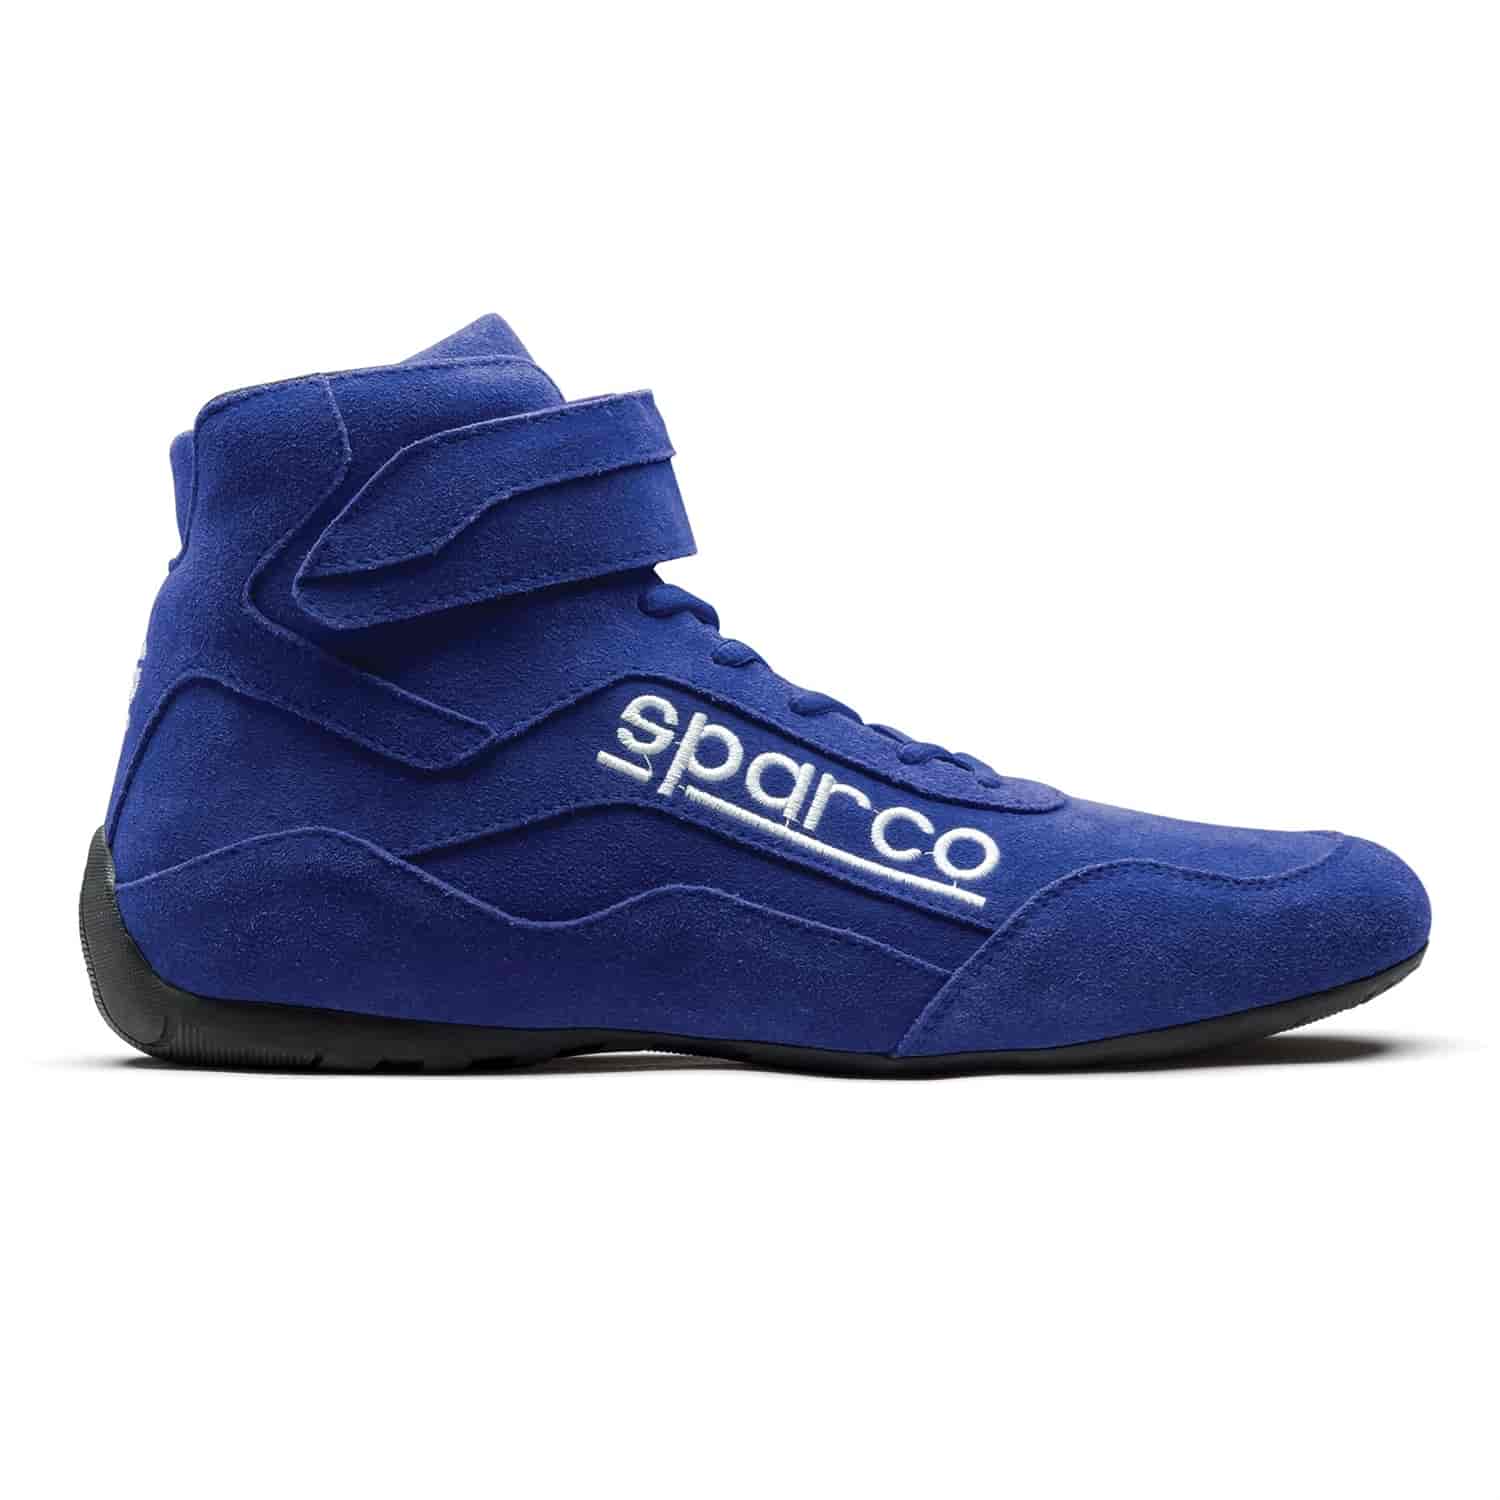 Race 2 Shoe Size 11.5 - Blue